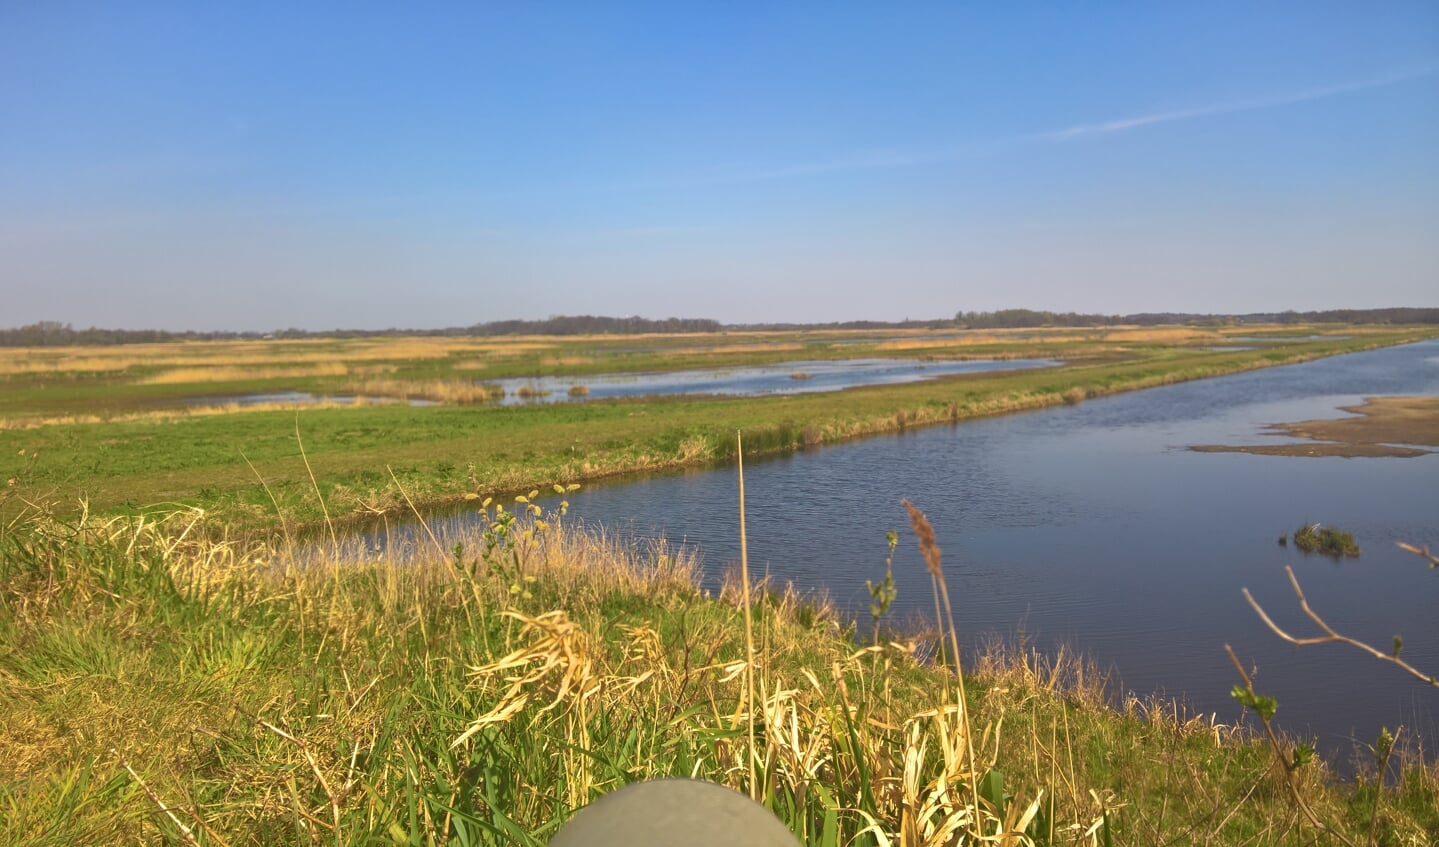 Zicht op deel van Oostelijke Binnenpolder (foto 9 april 2020) vanaf vogelkijkpunt (foto Wigle Braaksma).